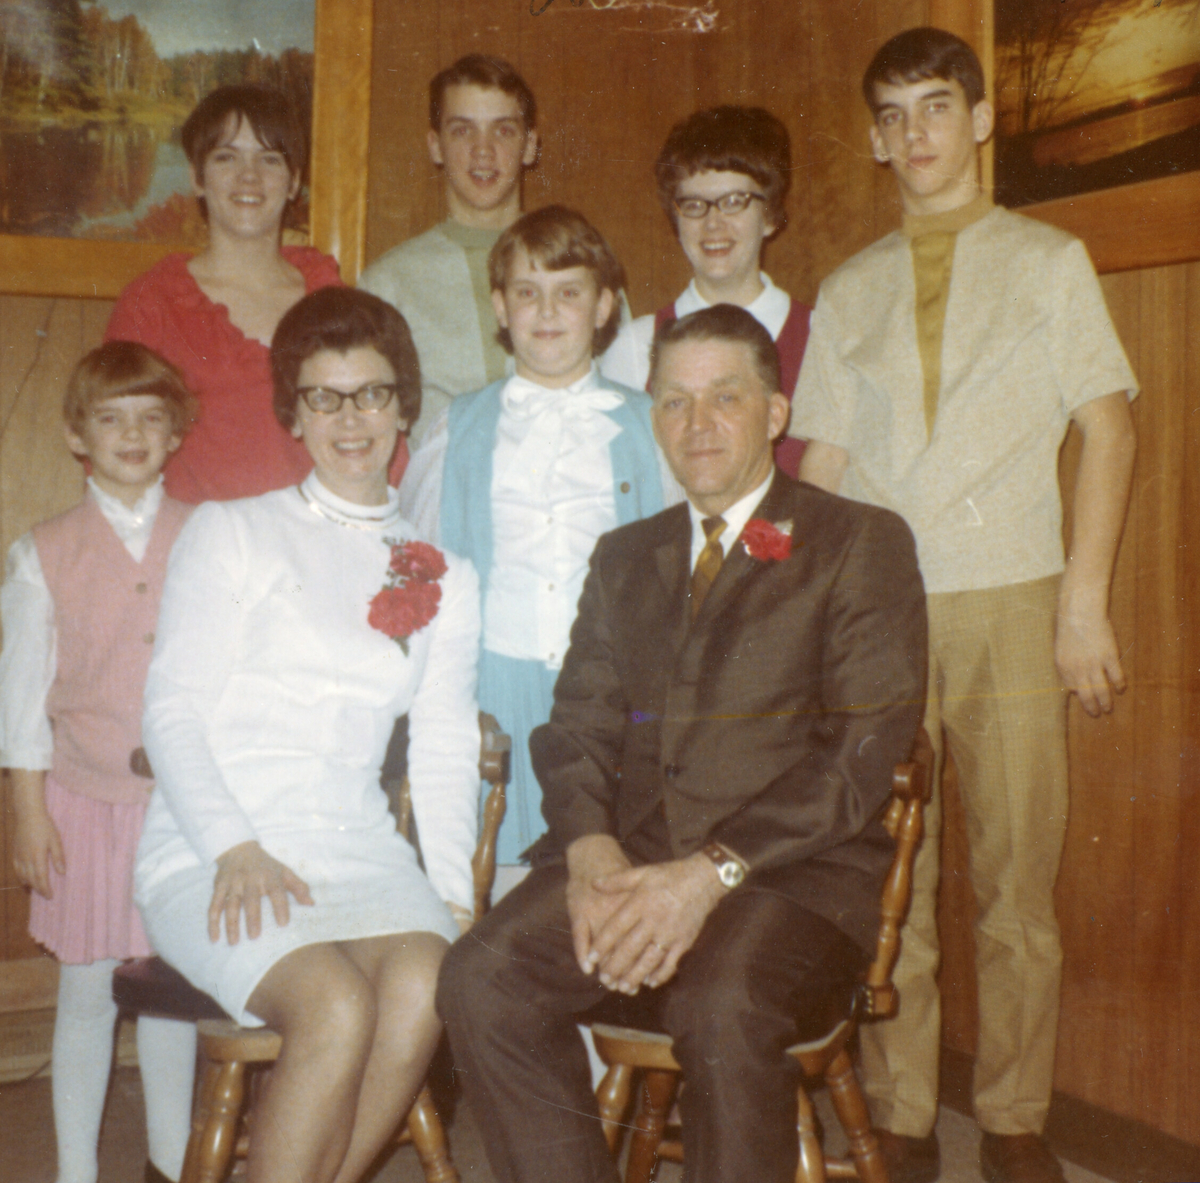 Reuben og Mildred Hellekson med familie i USA, desember 1969.  Bildet er tatt under feiring av sølvbryllup.